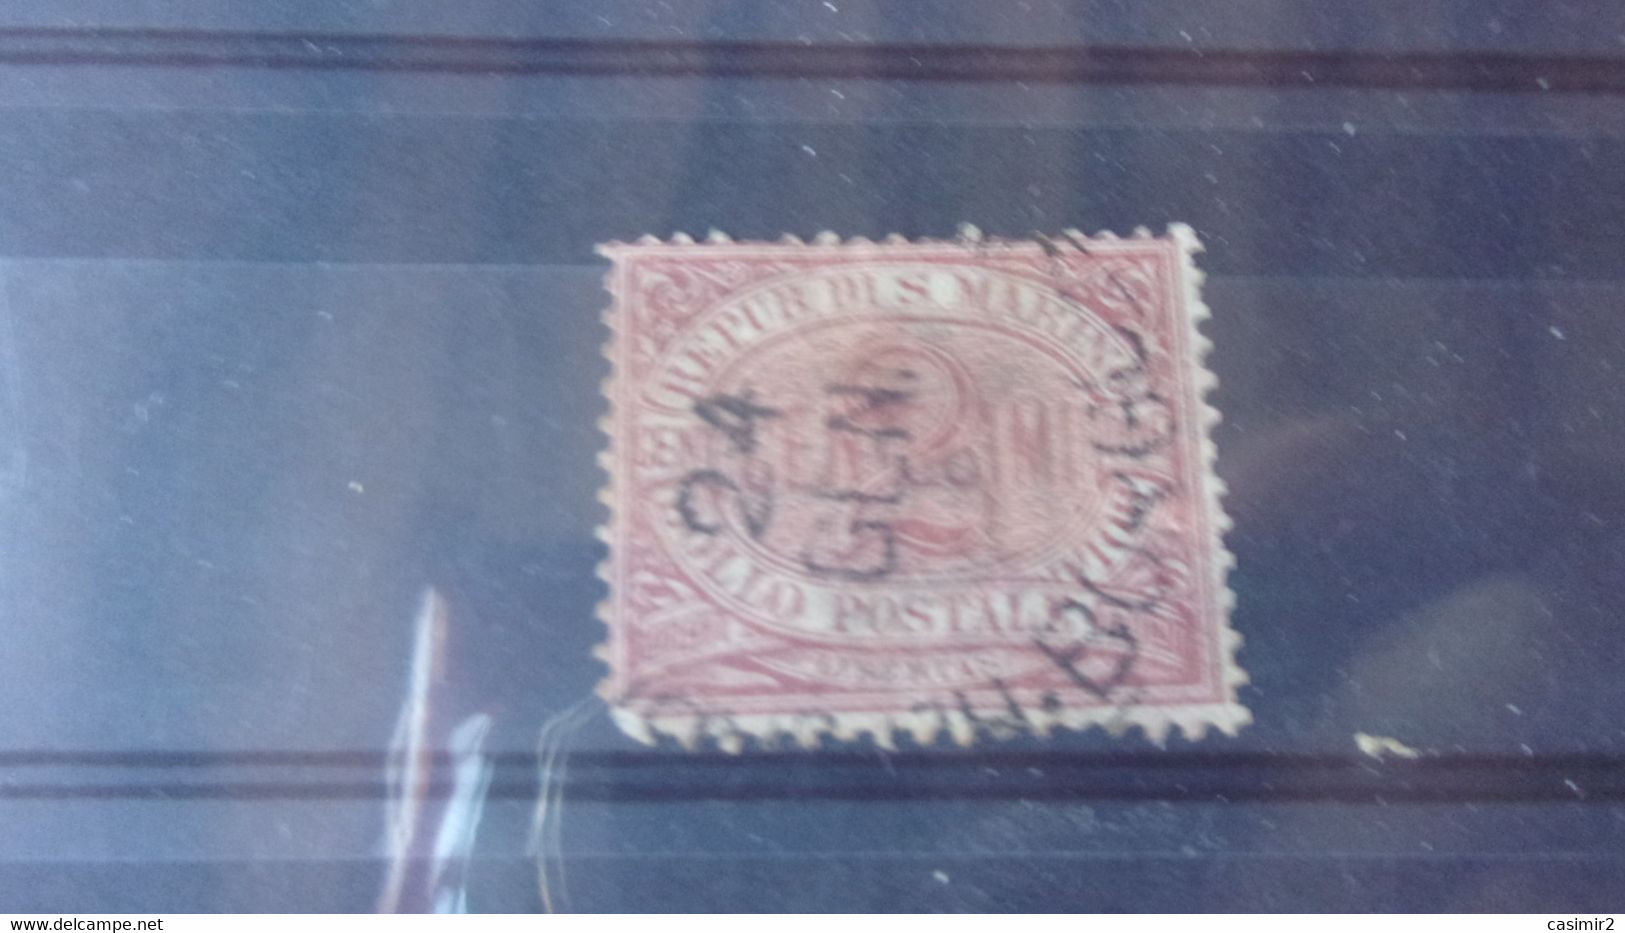 SAINT MARIN YVERT N°  26 - Used Stamps